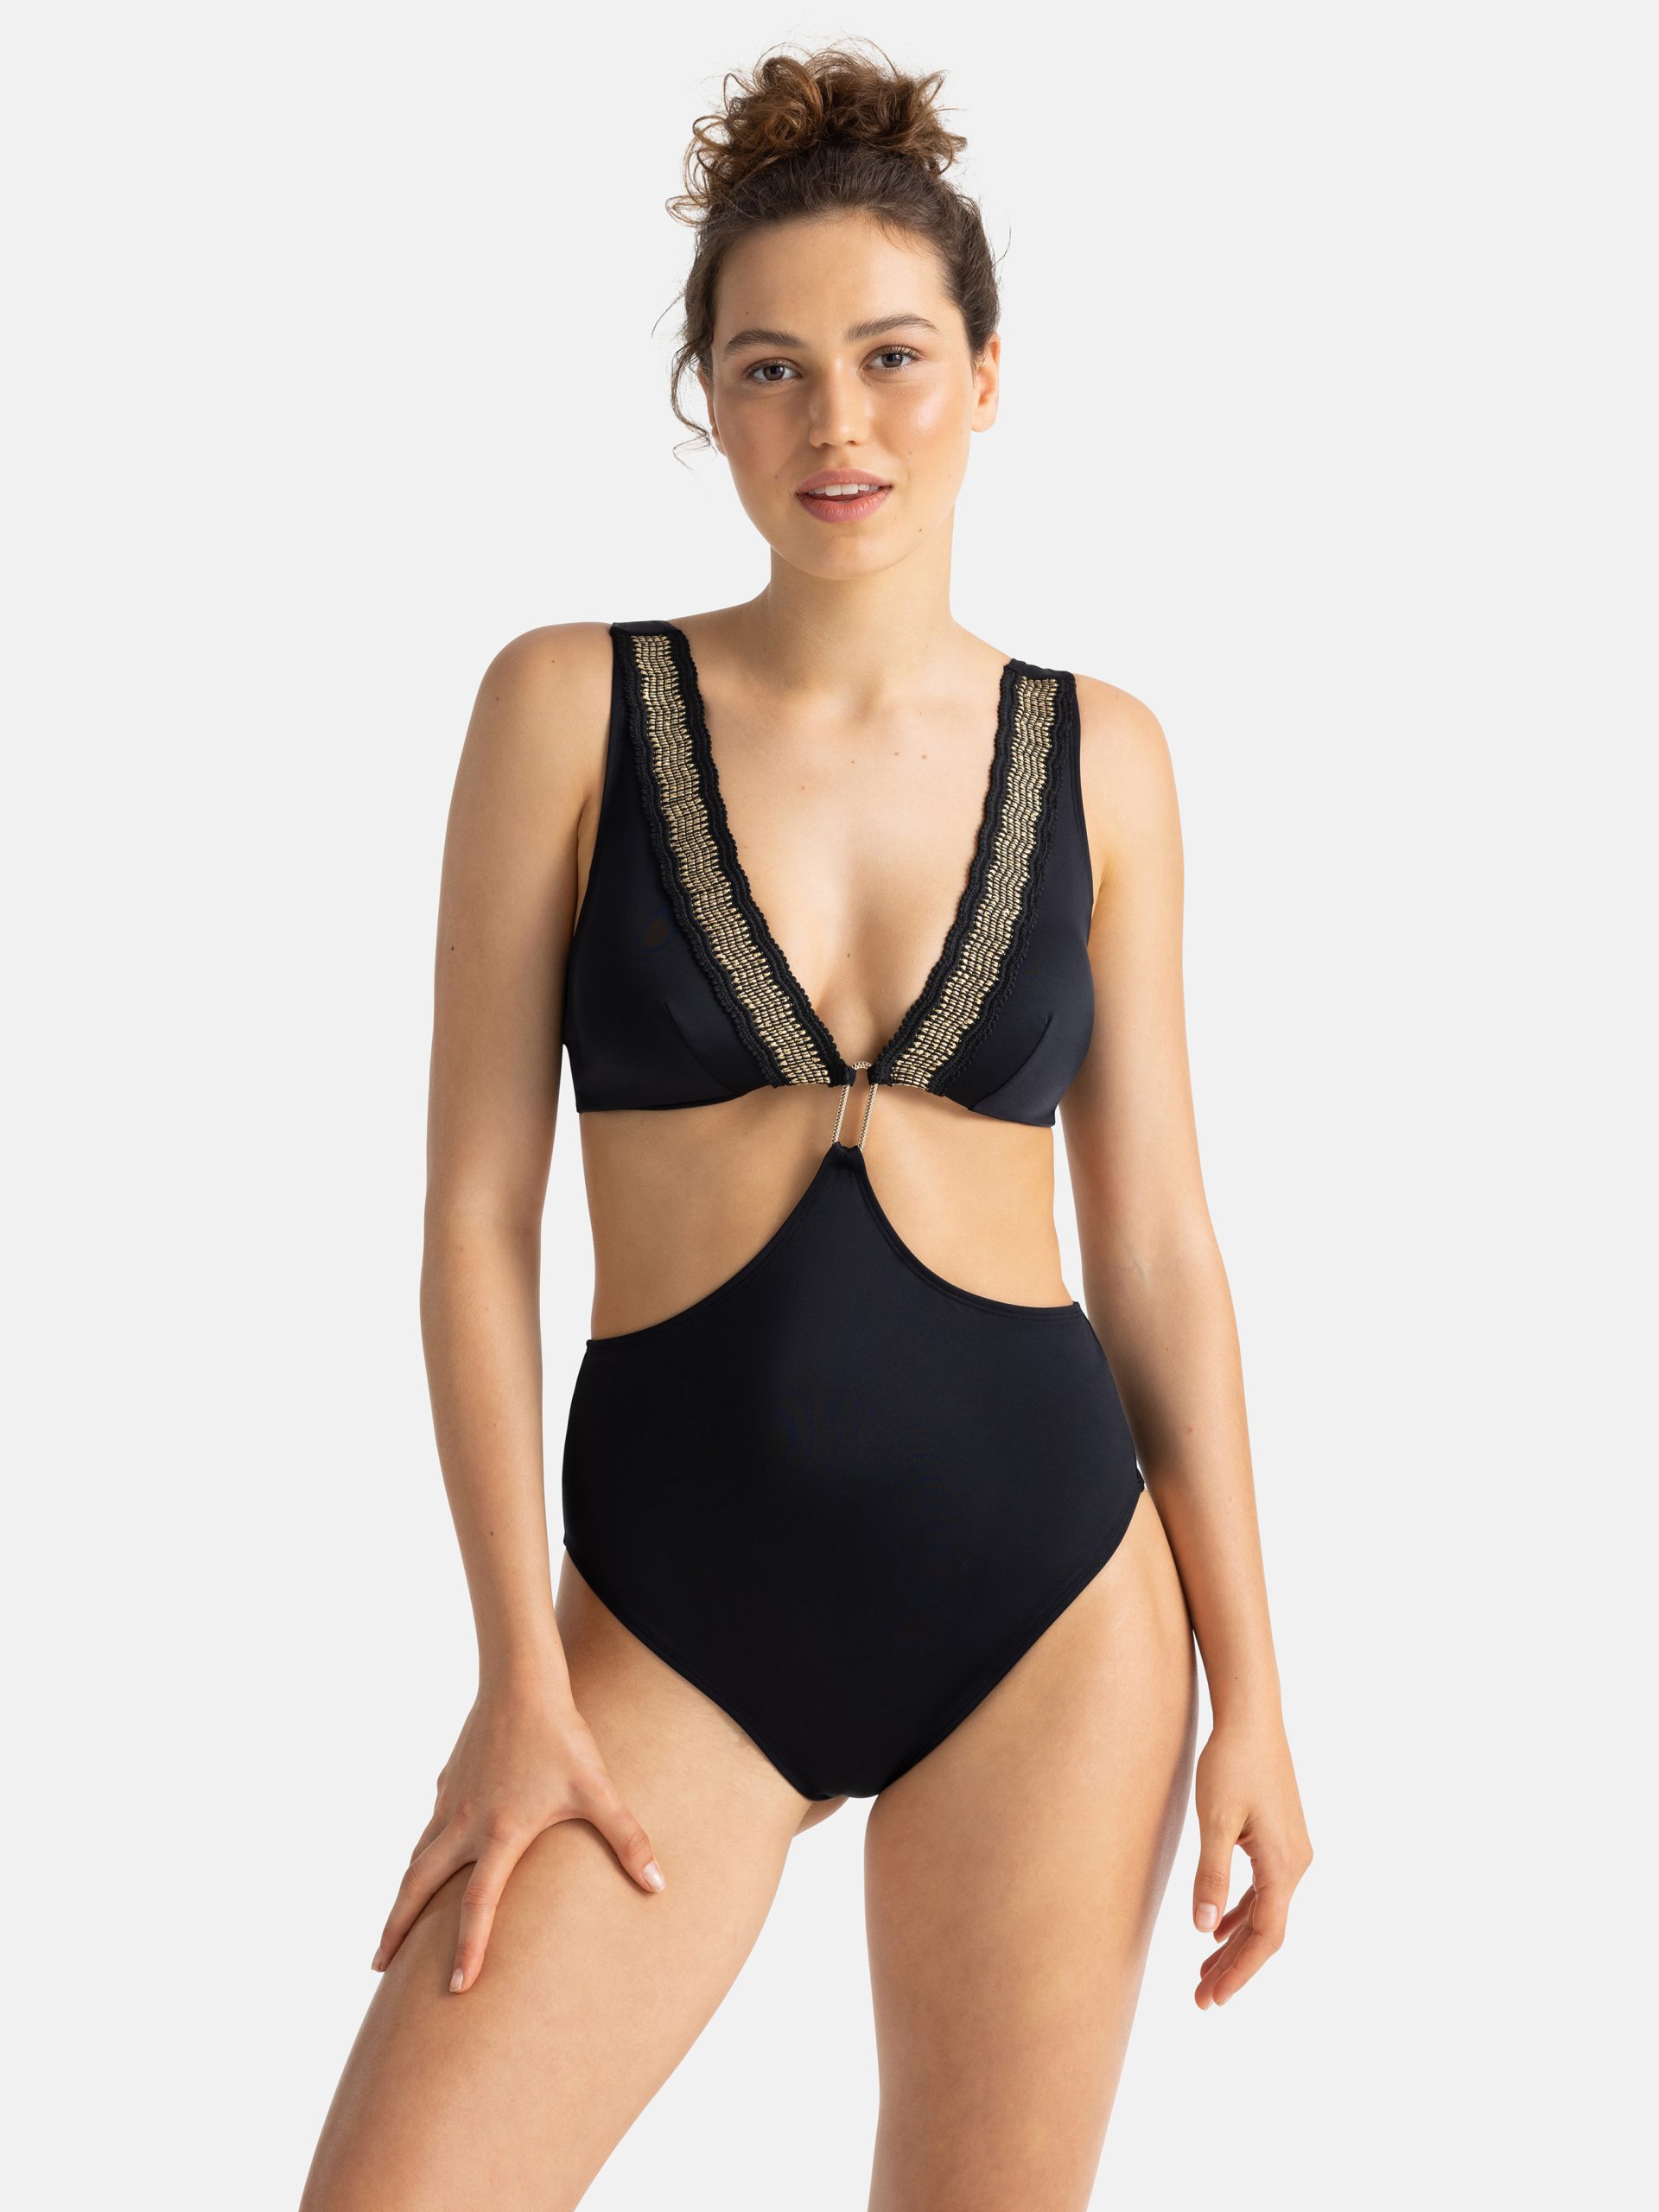 Swimsuit Archives – DORINA - Female Lingerie